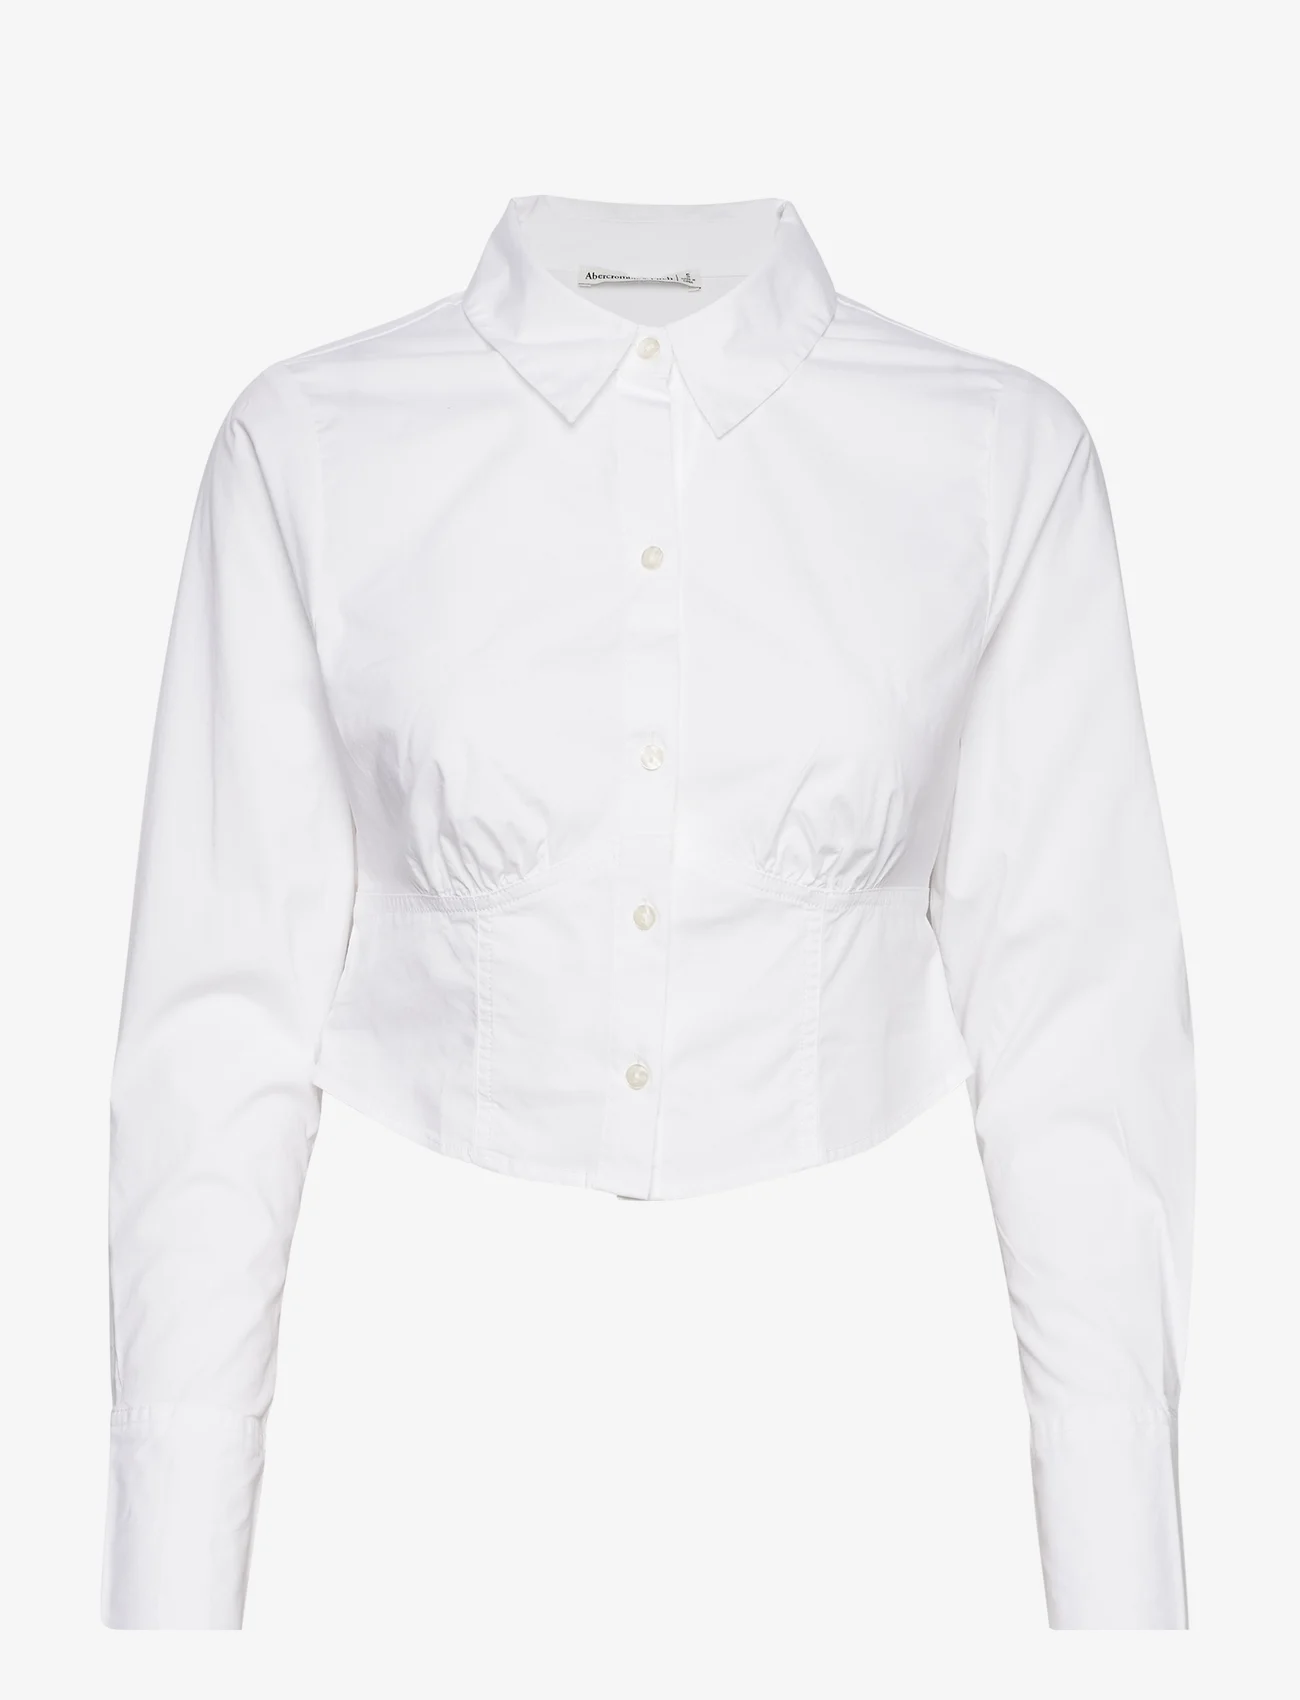 Abercrombie & Fitch - ANF WOMENS WOVENS - koszule z długimi rękawami - white - 0